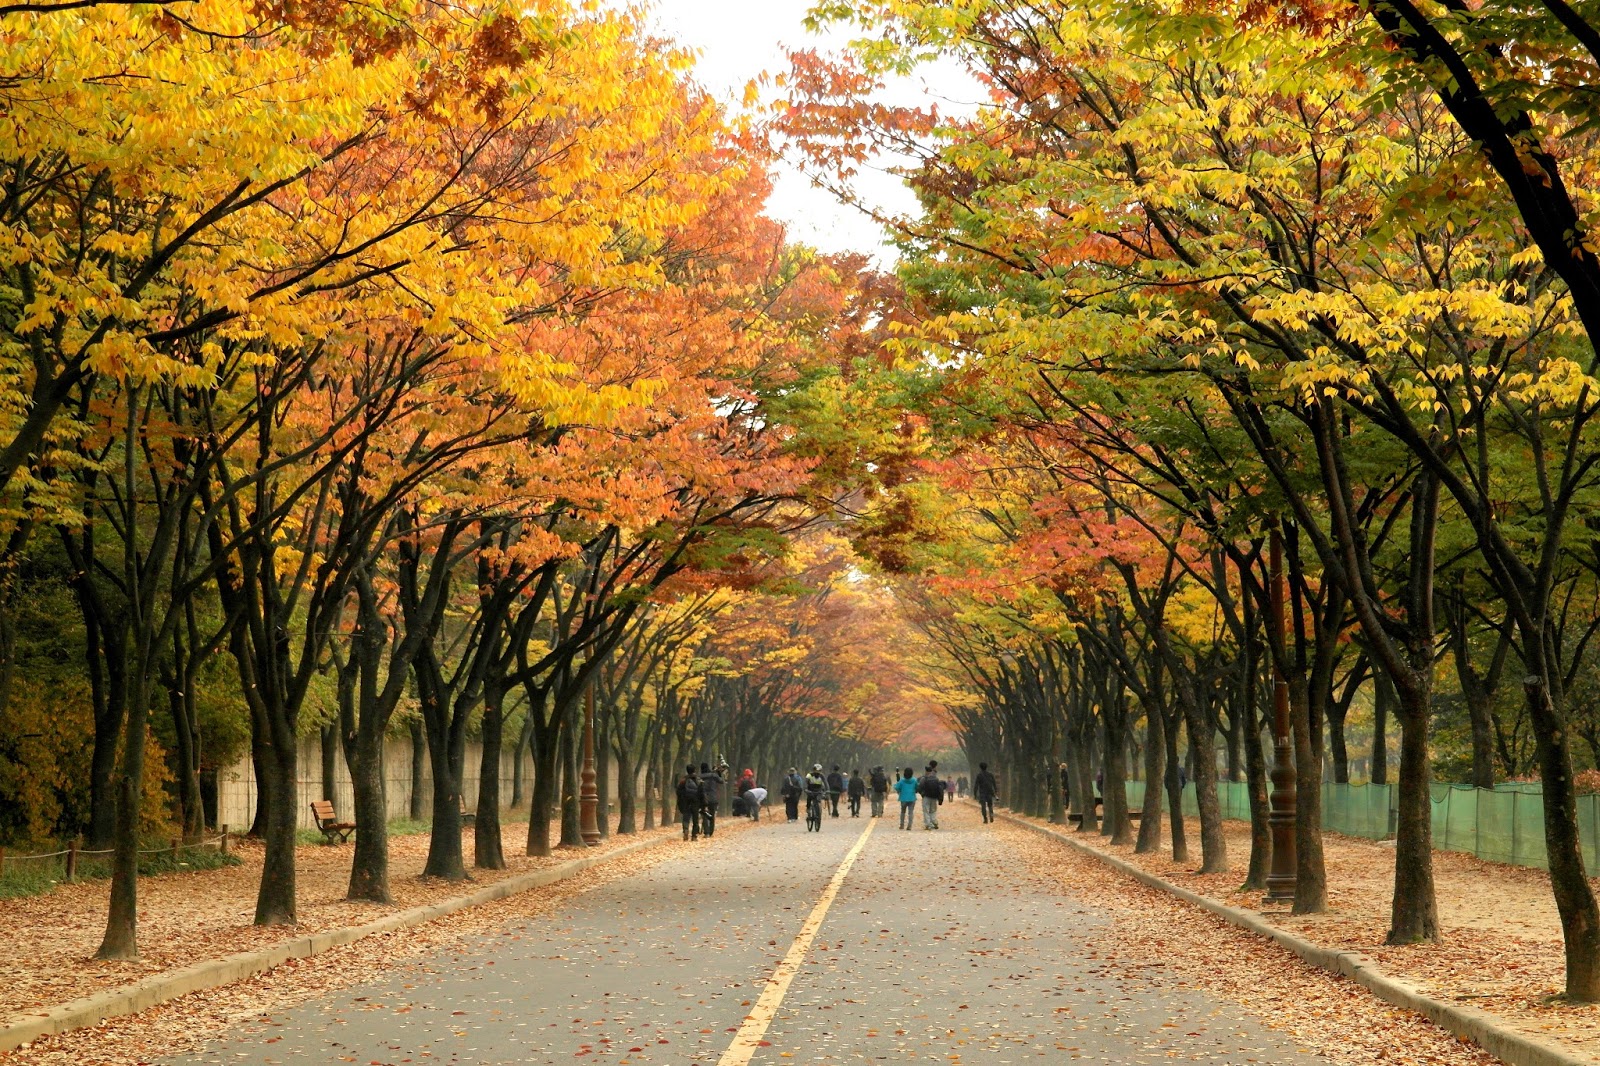 Incheon Grand Park